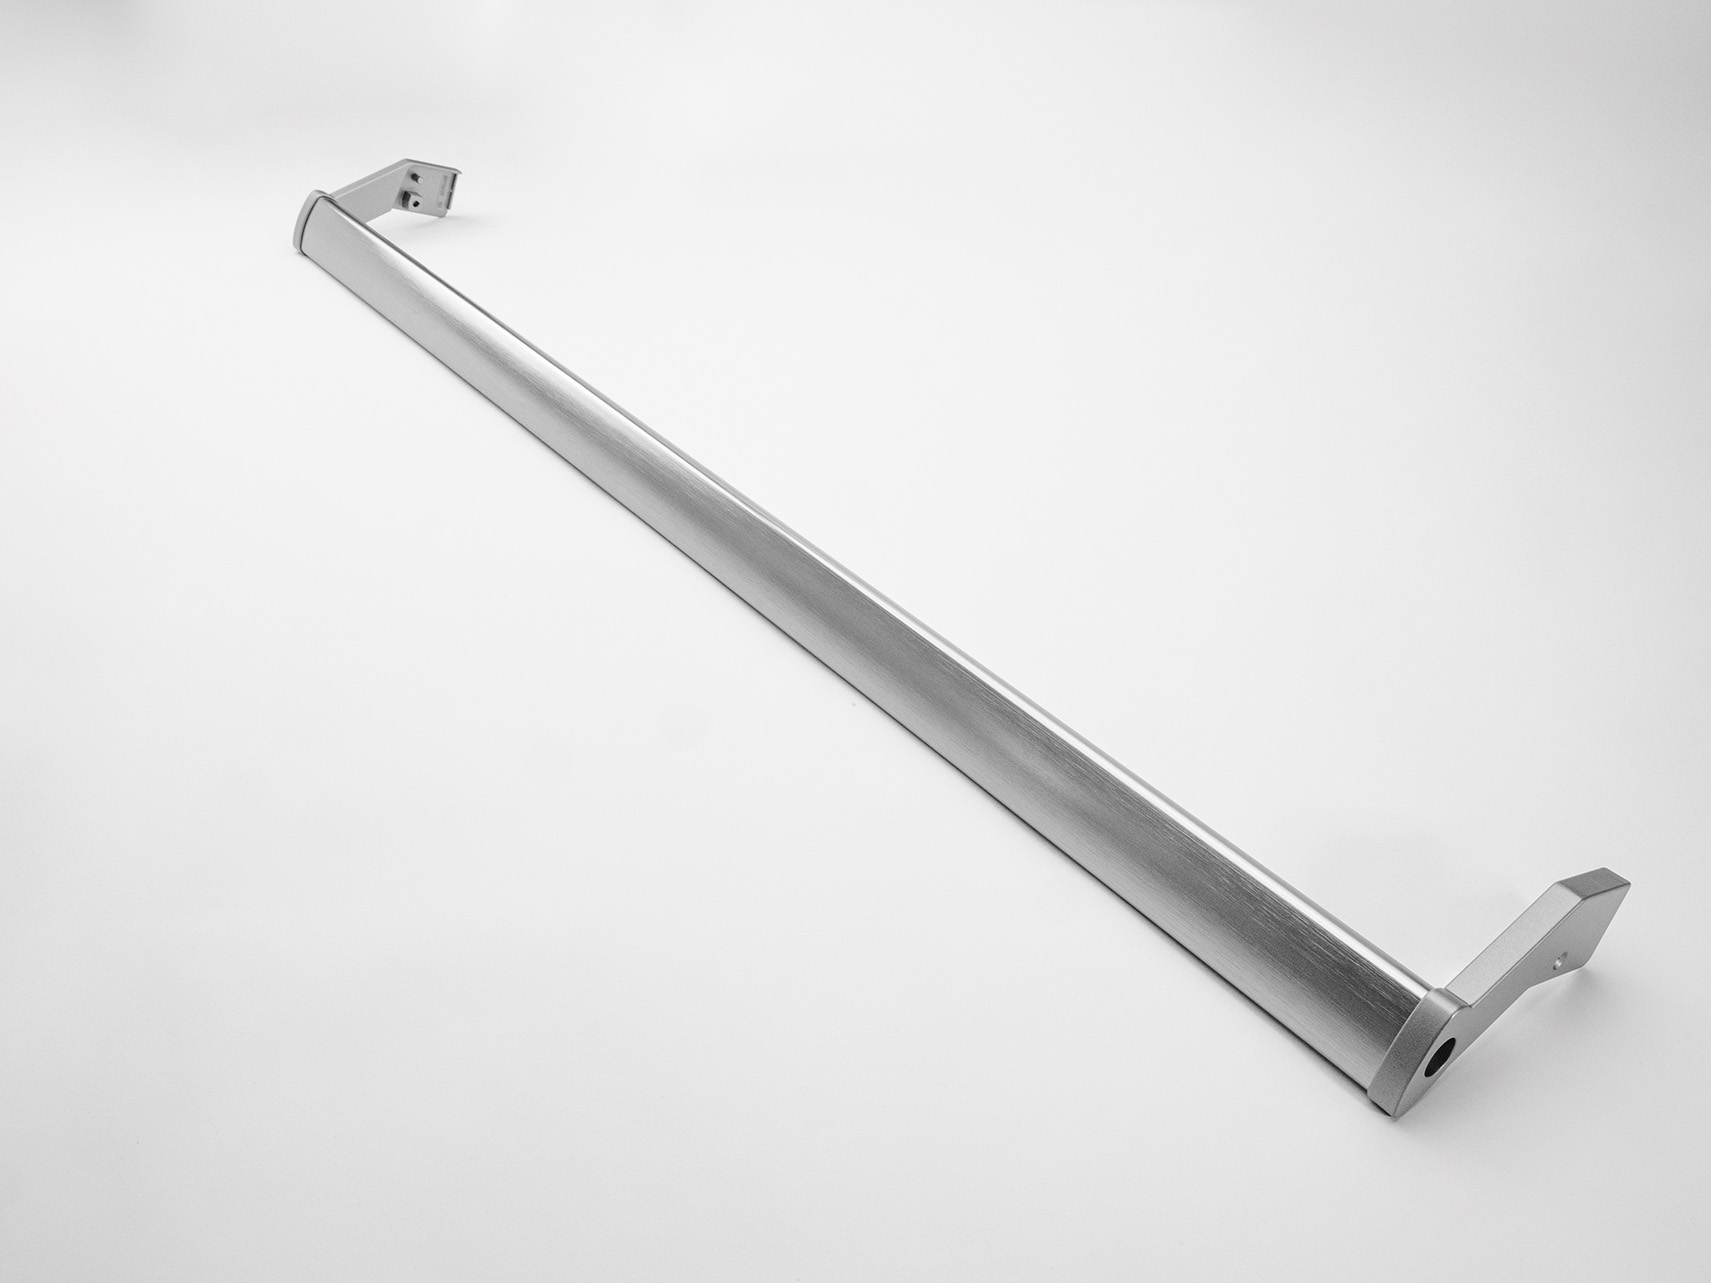 Maniglia Frigorifero tubolare in alluminio - Spazzolata Ossidata Inox con staffe pressofuse in alluminio verniciate grigio metallizzato